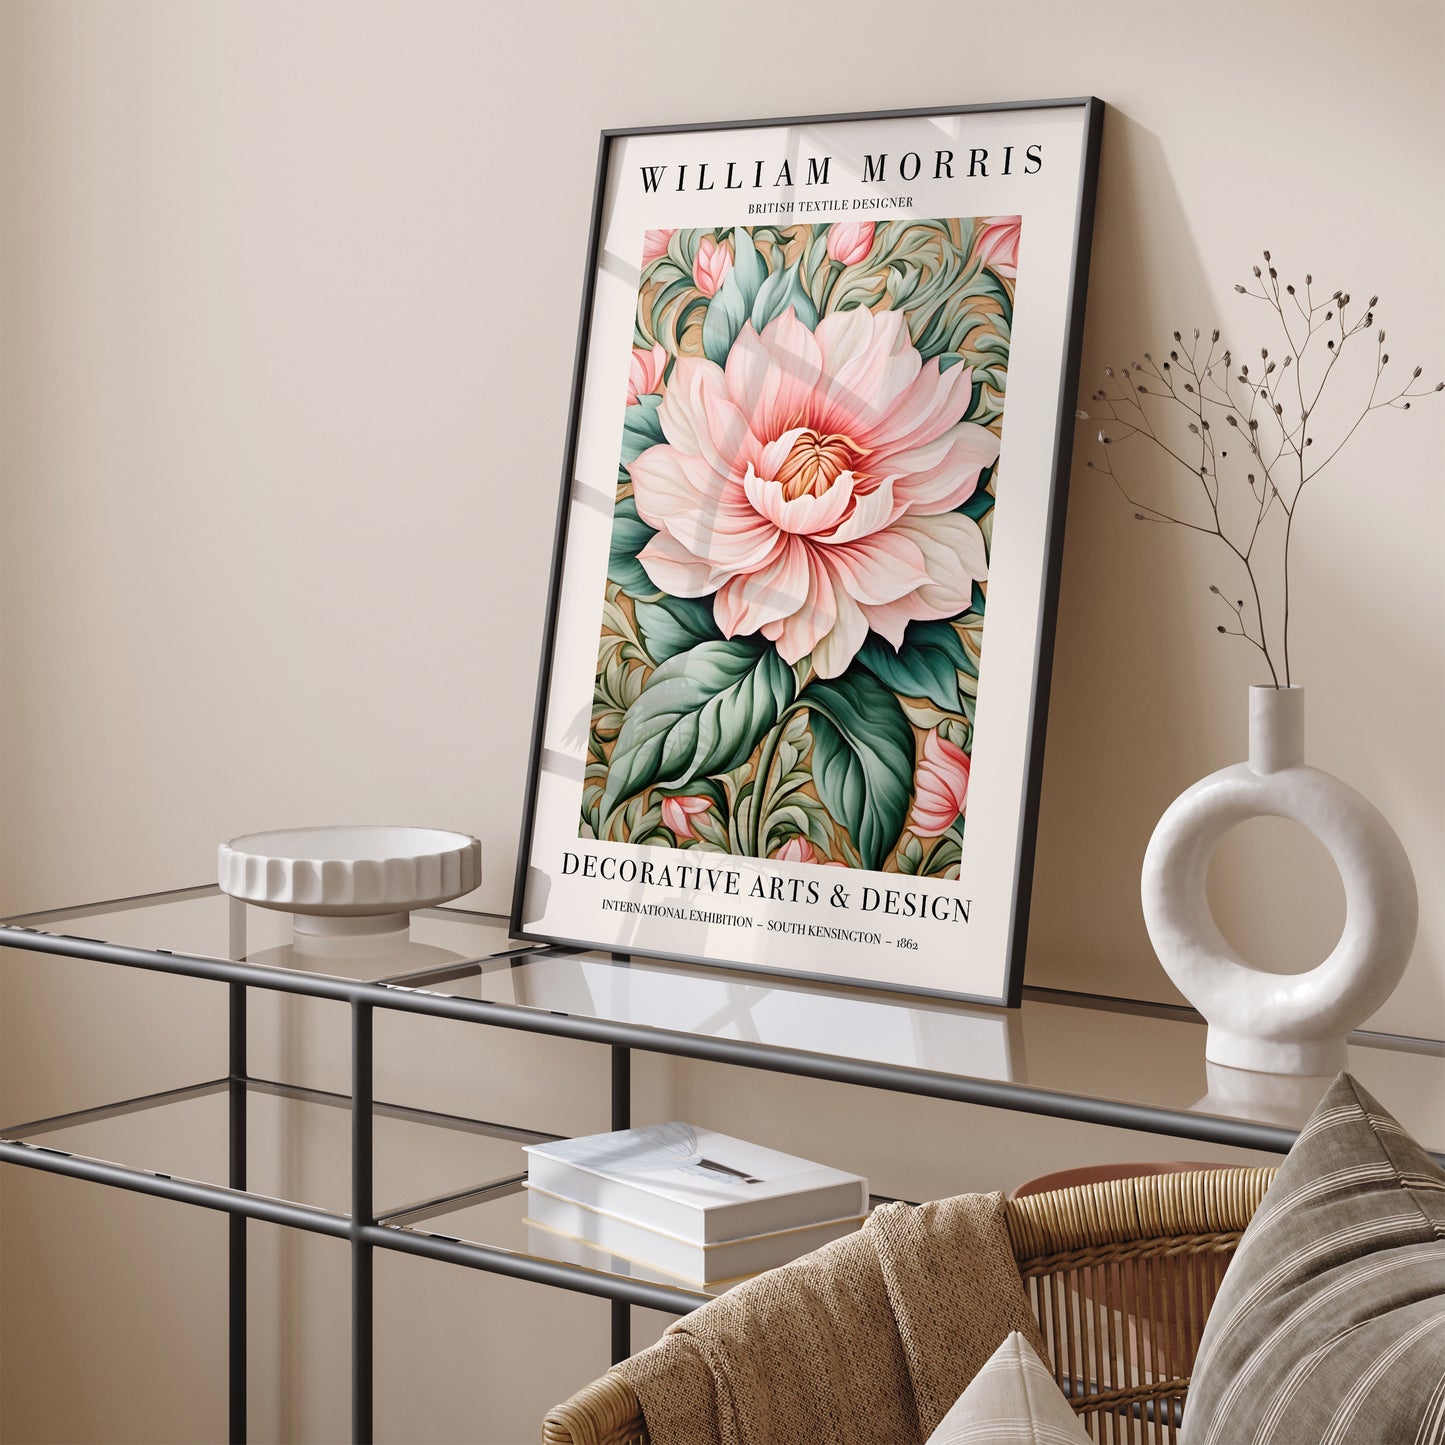 William Morris Floral Exhibition Poster